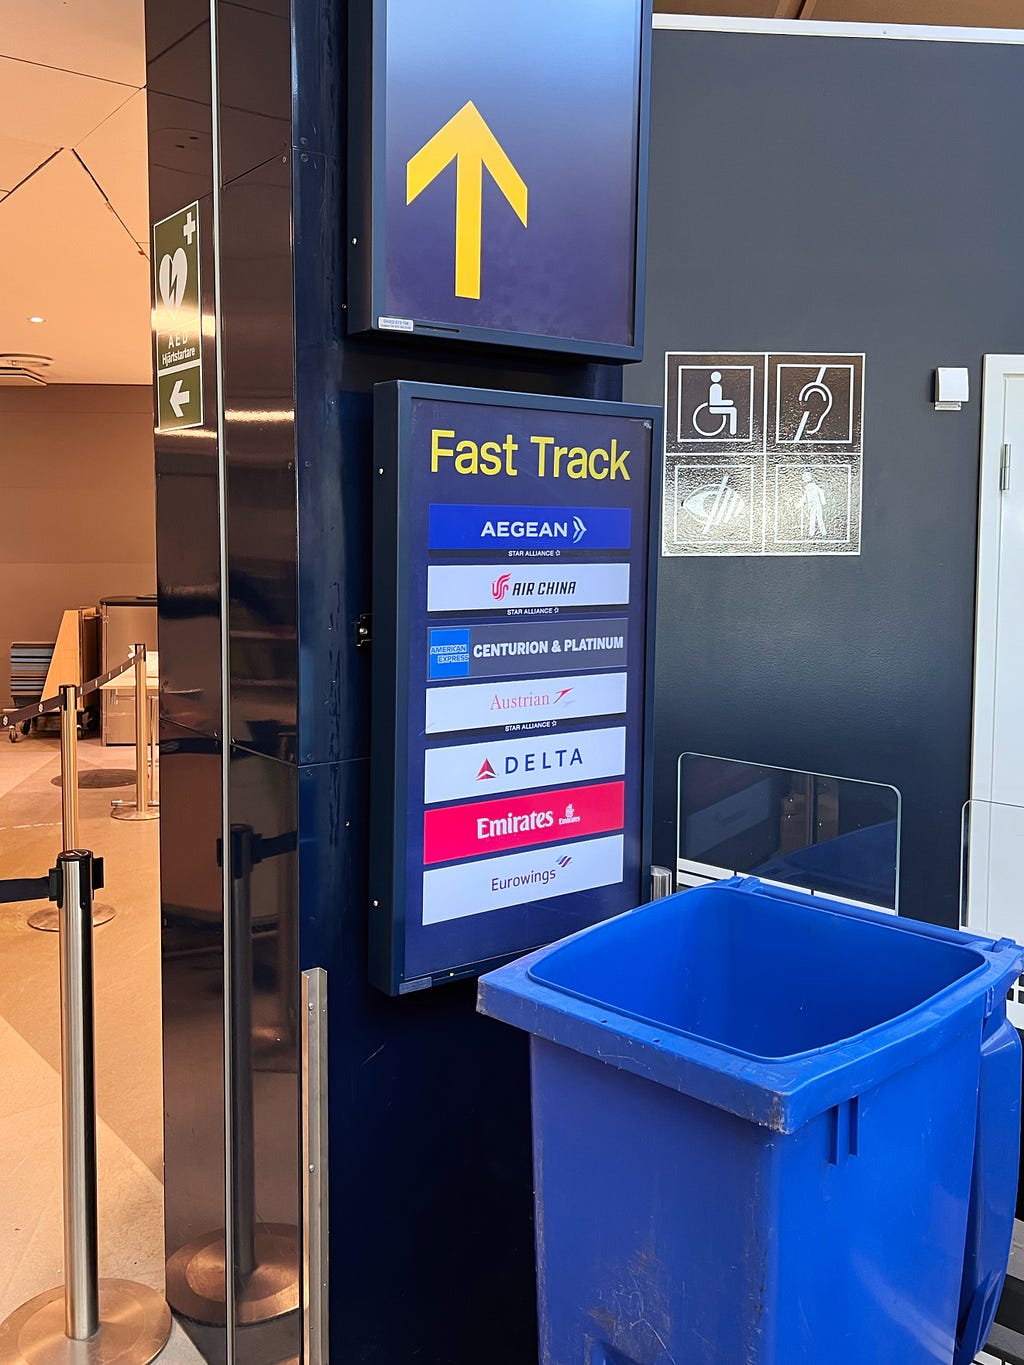 Fast Track at Stockholm’s Arlanda Airport (ARN)